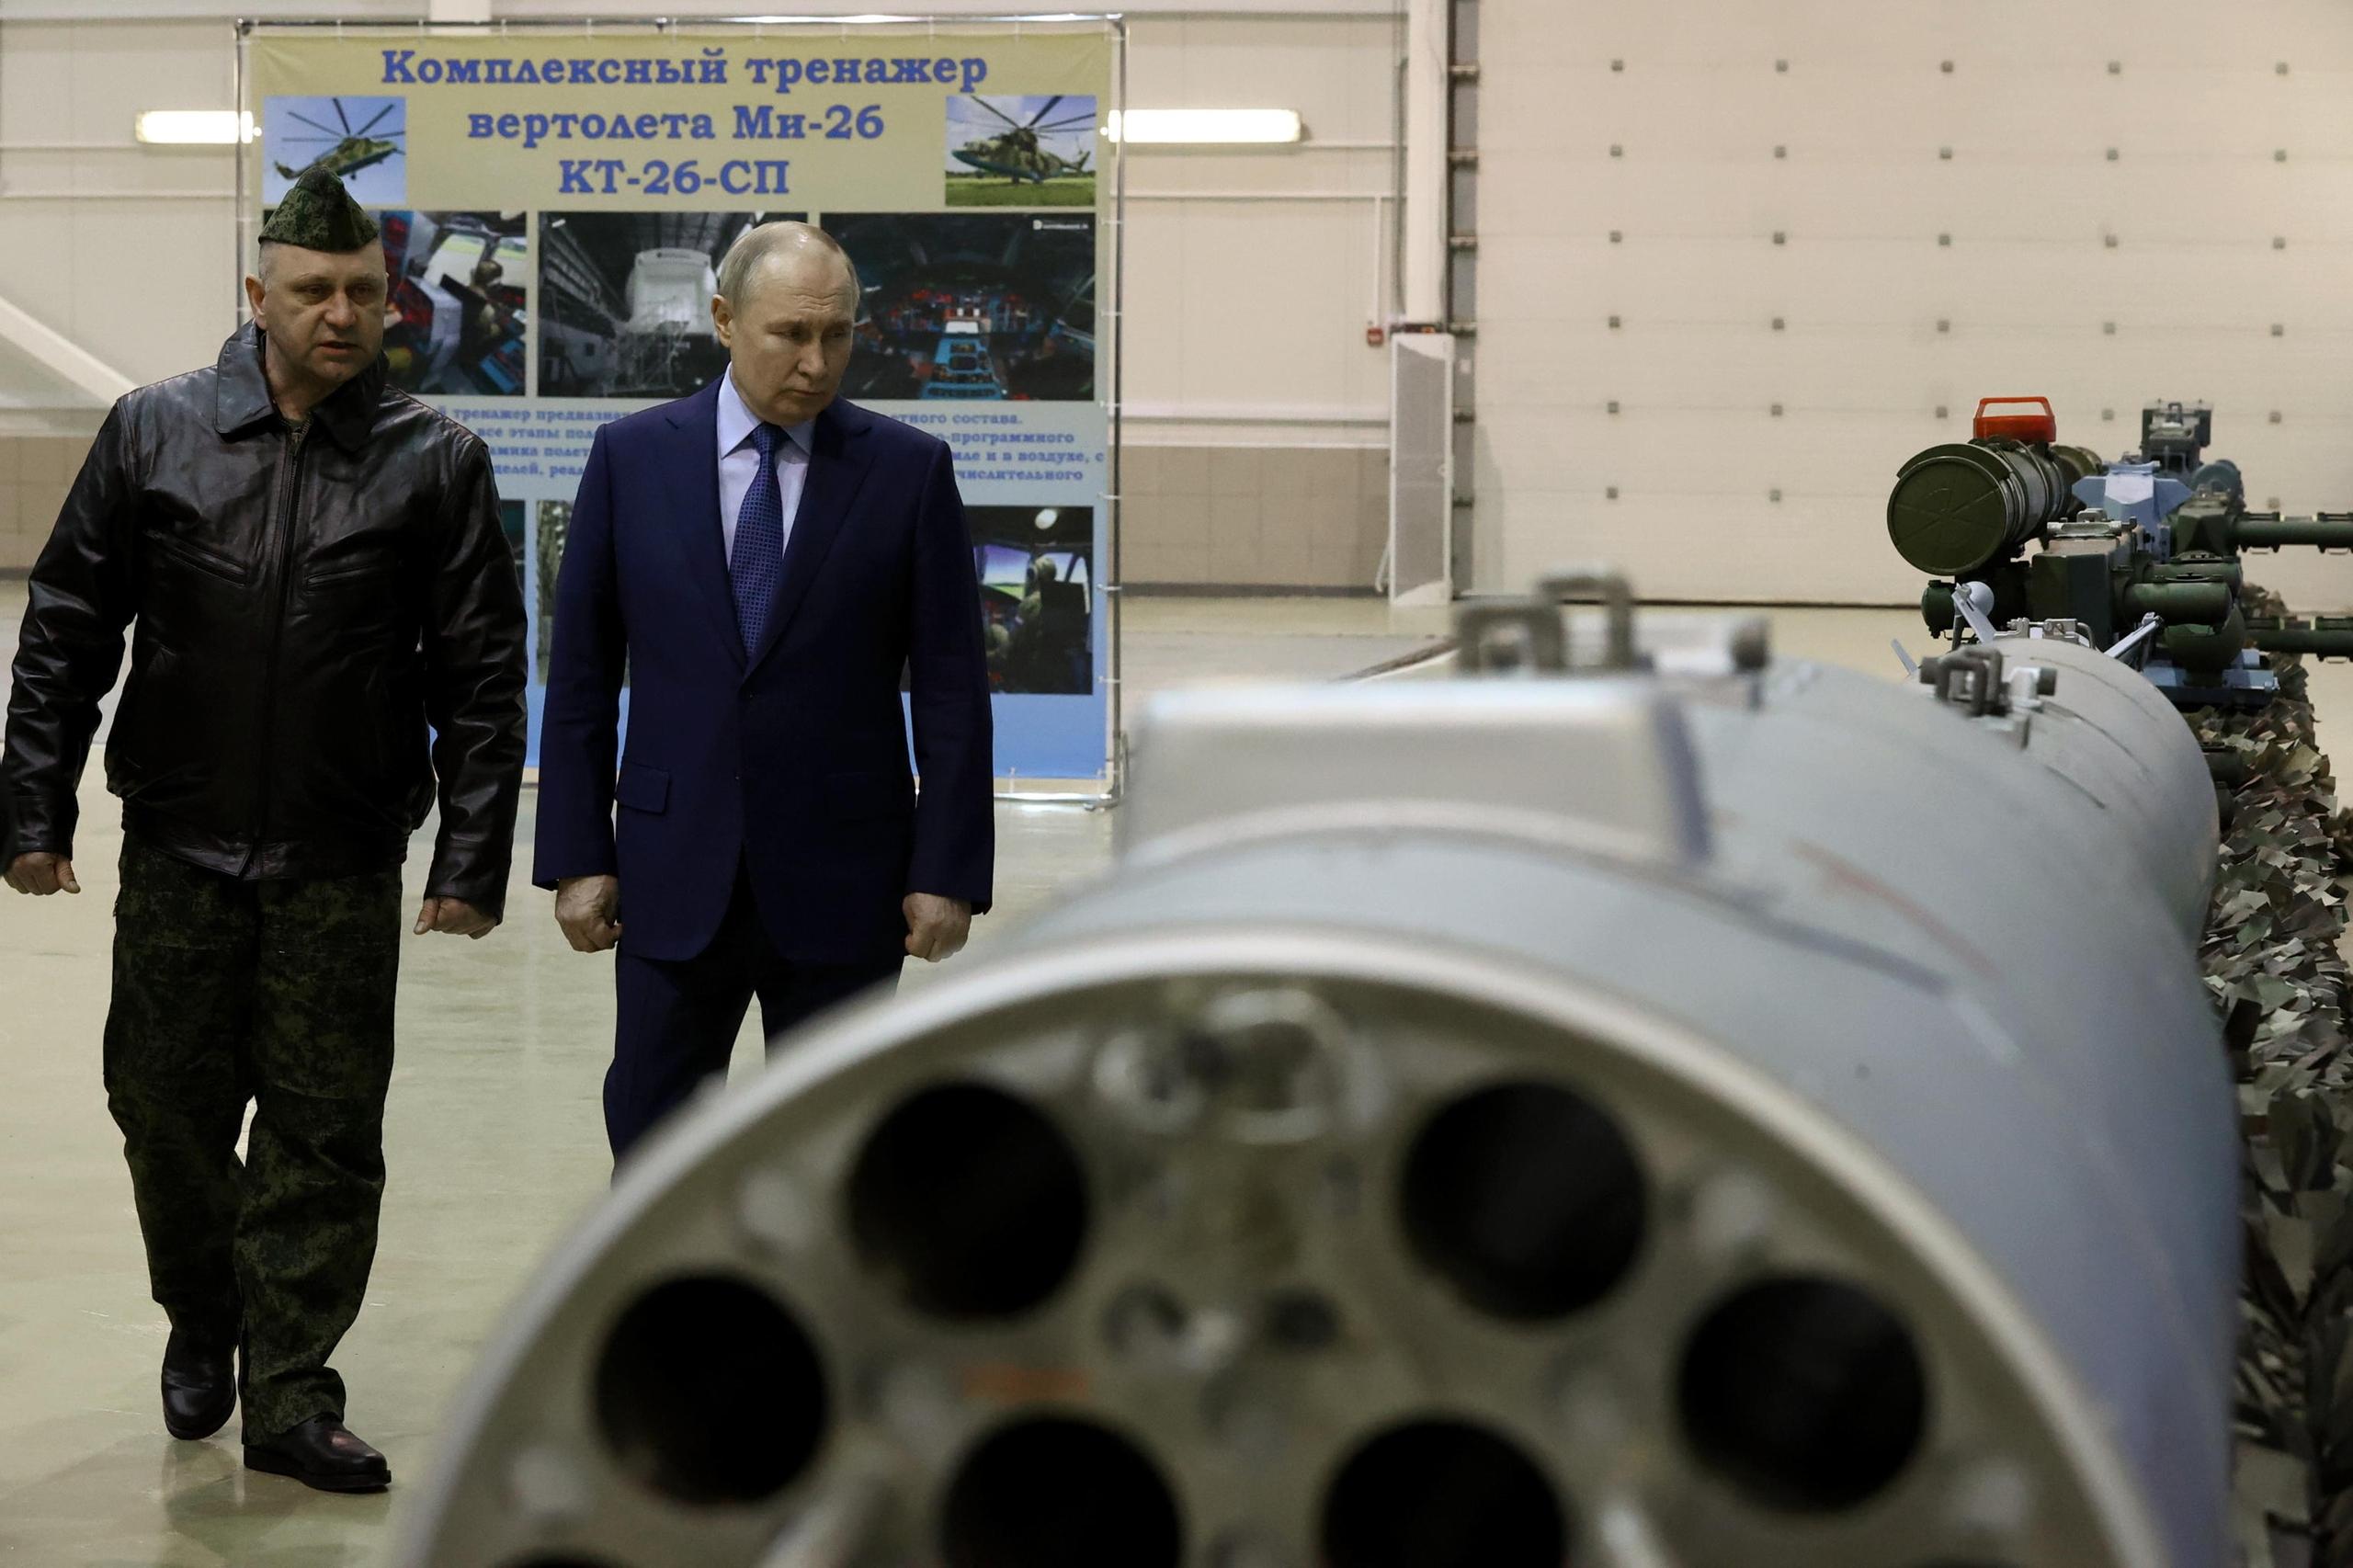 Guerra in Ucraina, la diretta. Putin minaccia: “Pronti a colpire i caccia F 16 anche se in basi Nato”